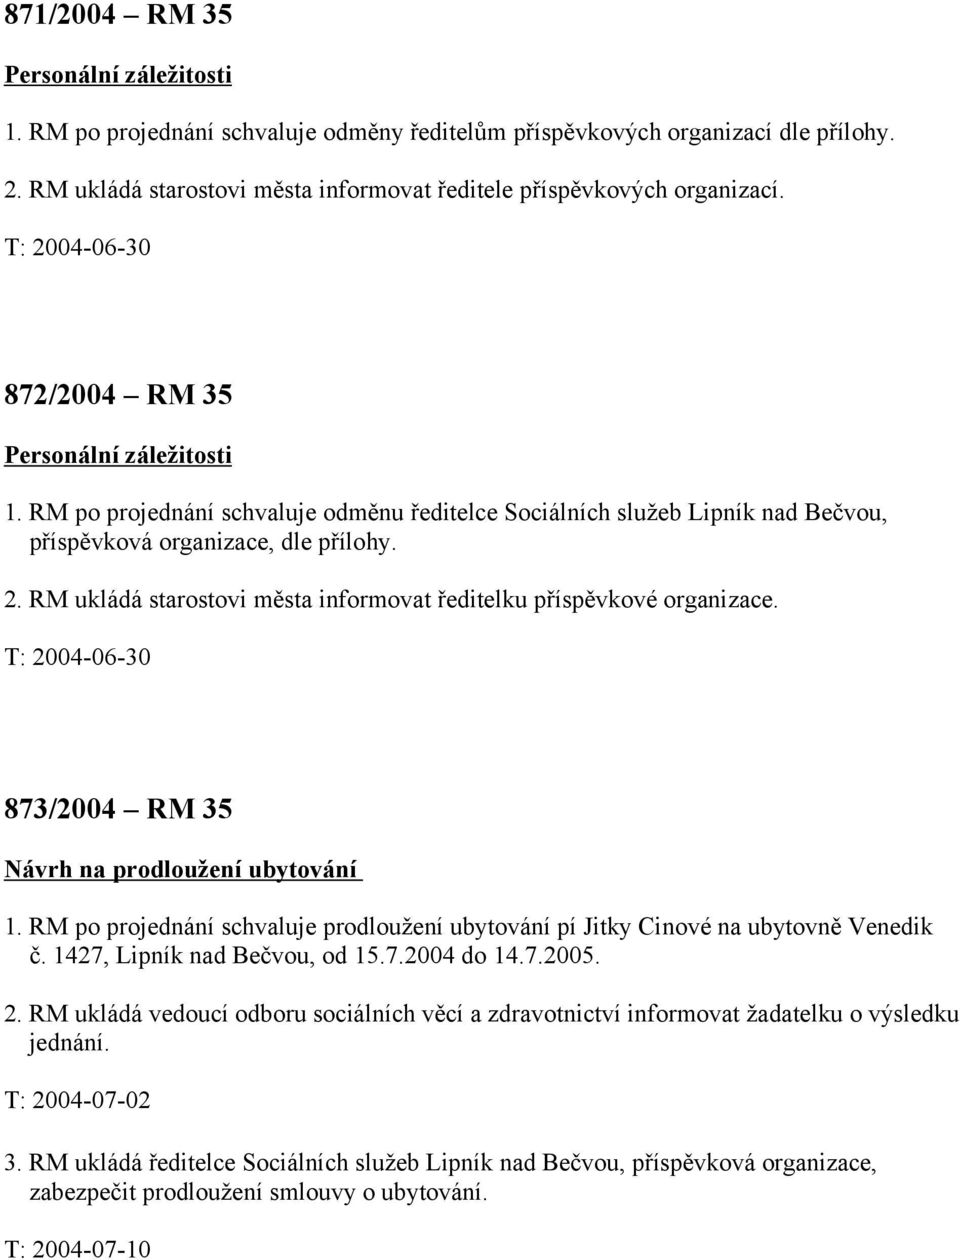 T: 2004-06-30 873/2004 RM 35 Návrh na prodloužení ubytování 1. RM po projednání schvaluje prodloužení ubytování pí Jitky Cinové na ubytovně Venedik č. 1427, Lipník nad Bečvou, od 15.7.2004 do 14.7.2005.